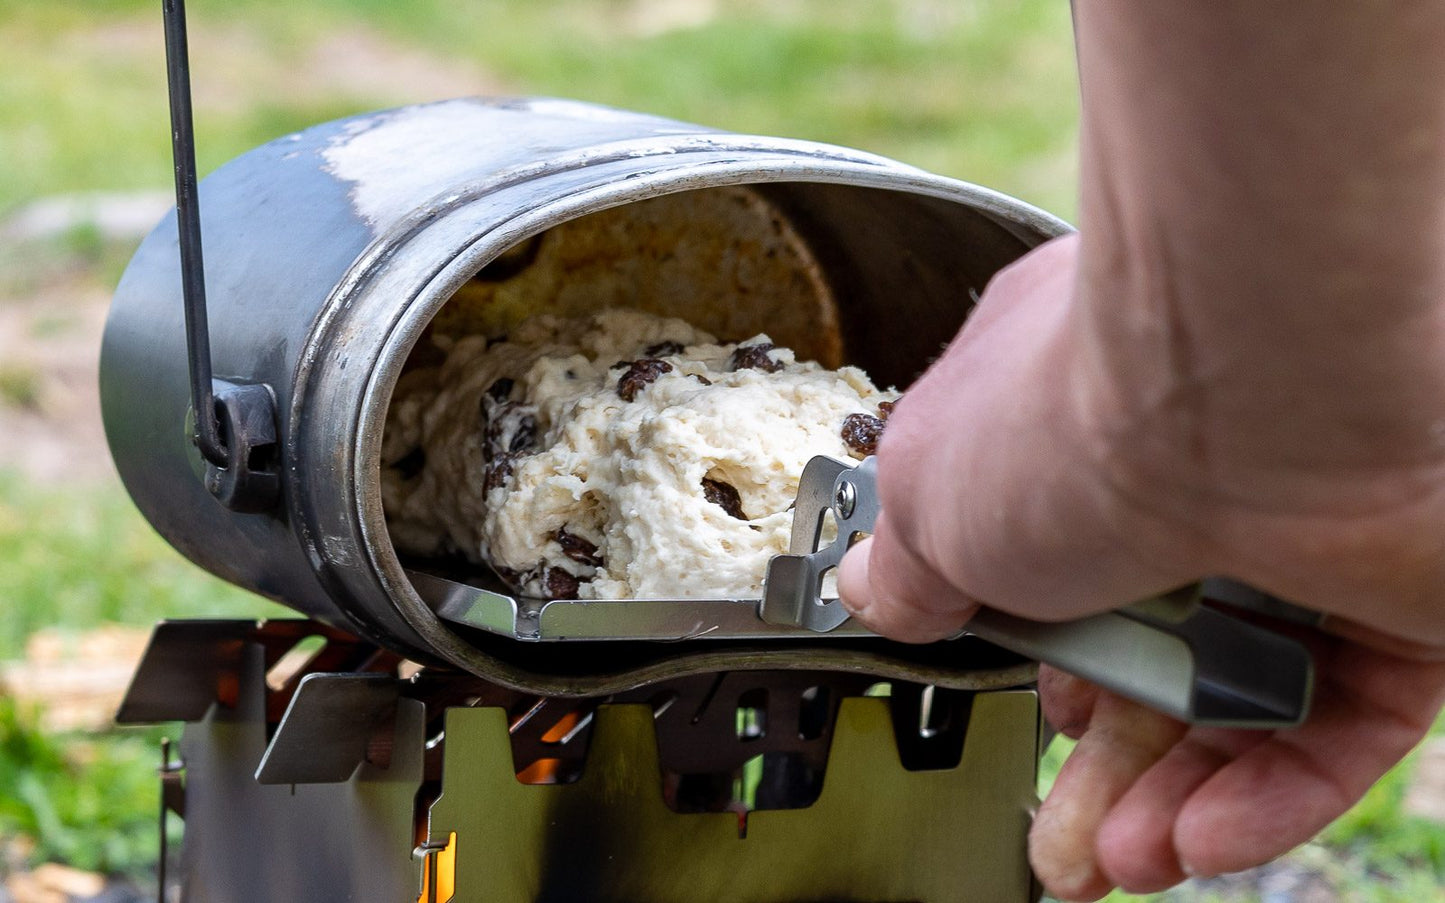 Die Multischale im Einsatz als Backblech, darauf ein Teig mit Rosinen, beim Hineinschieben in ein Kochgeschirr das vom Hobokocher befeuert wird.